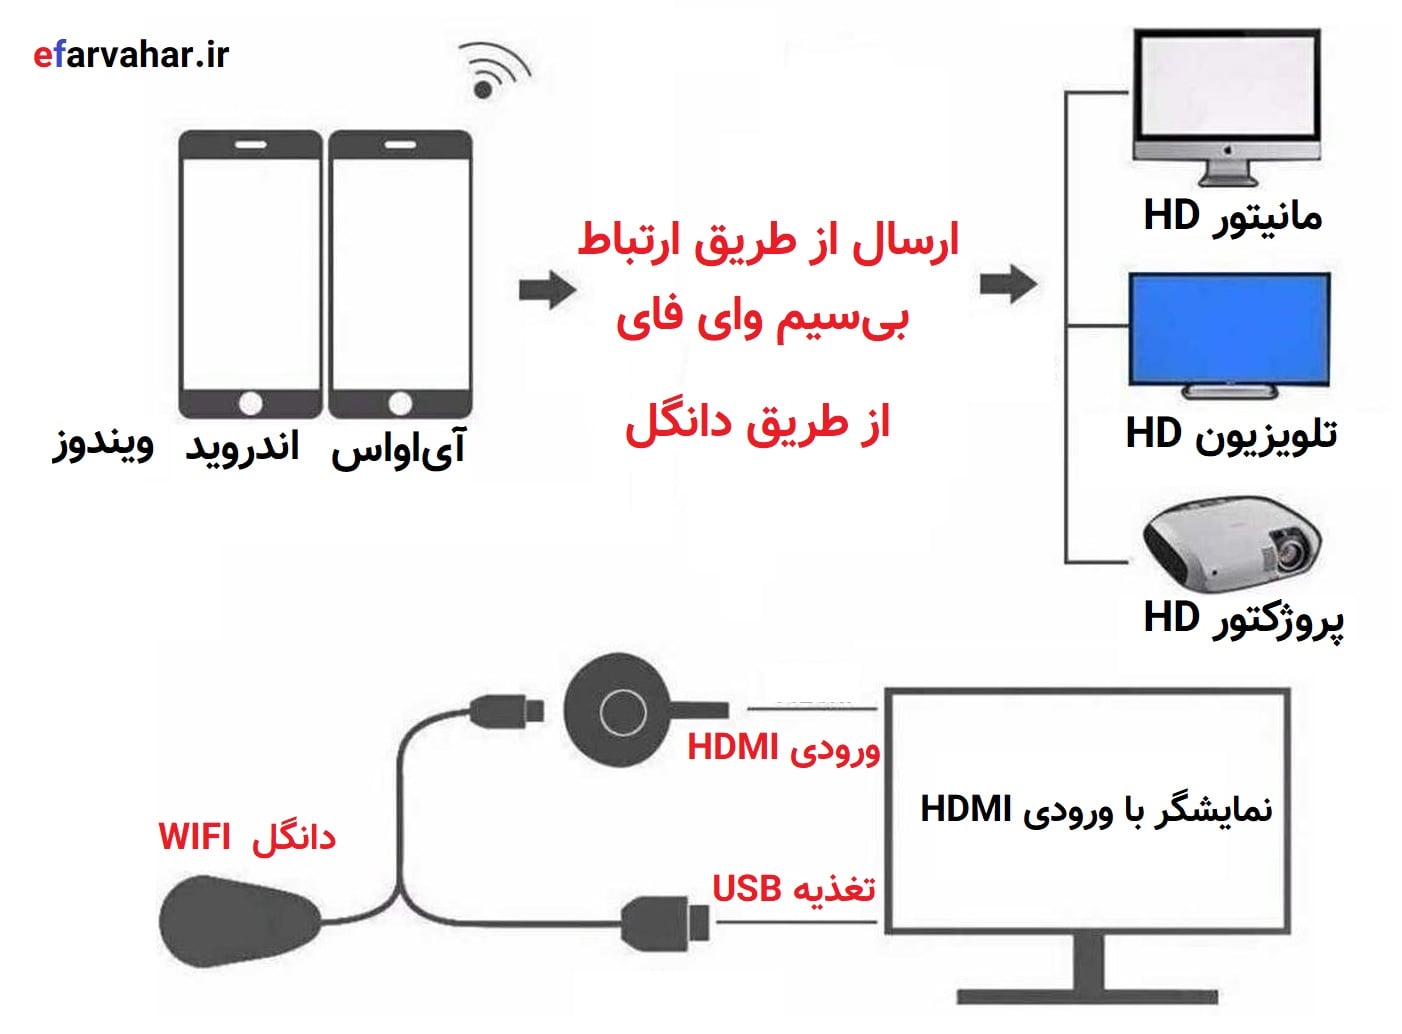 آموزش دانگل HDMI لگ پیکسل